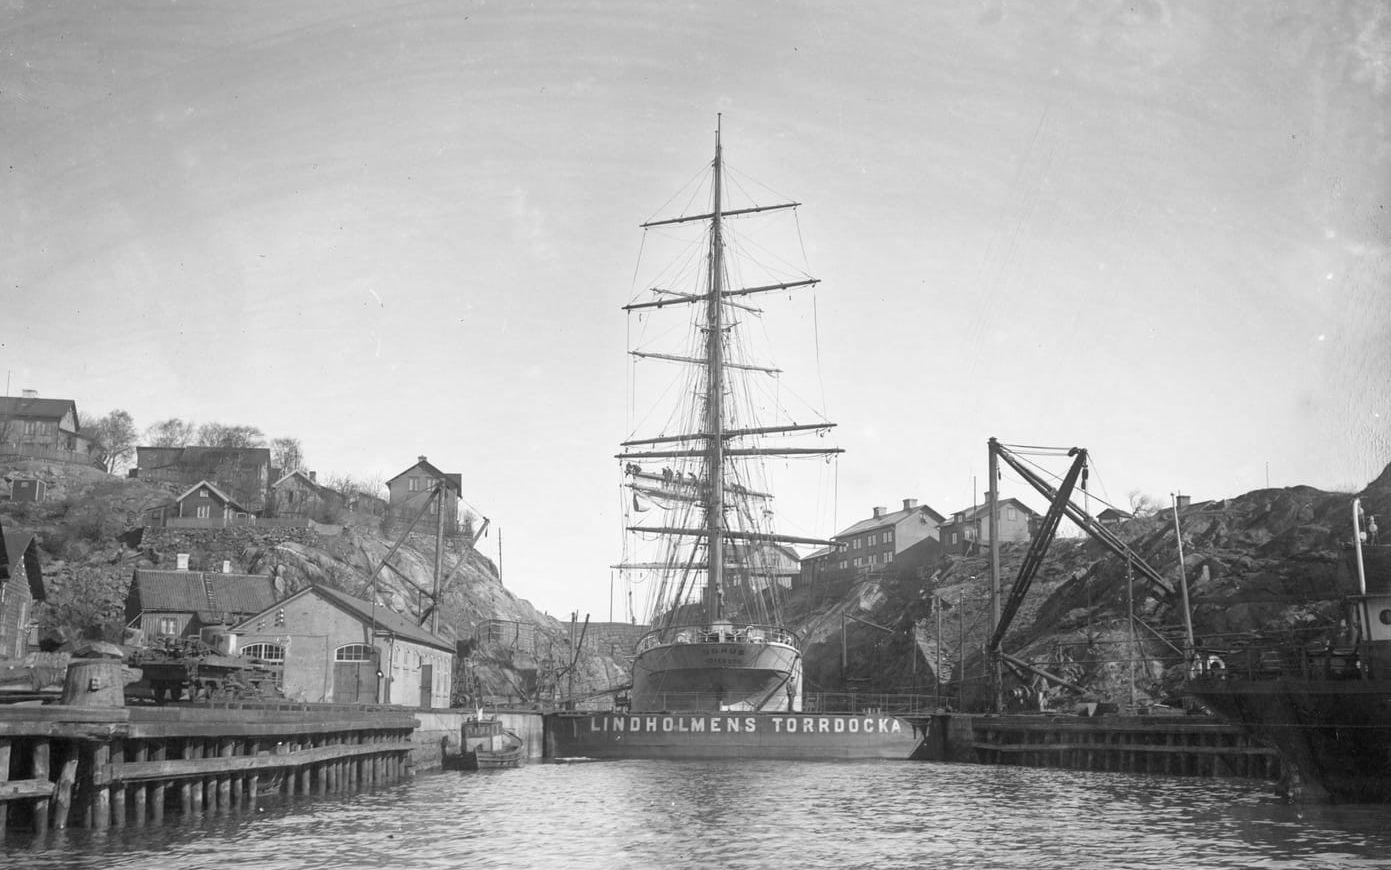 Det hade varit en hård isvinter. Våren 1924, i skuggan av Götaverkens dominans, drog sig Lindholmens varv fram på reparationsuppdrag. Ett femtiotal fartyg – huvudsakligen ångare som behövde ompyssling – väntade vid kajerna. Någonstans i den brokiga röran på varvsområdet framställdes en järnbro. Som ett minne av en svunnen tid reparerades och omdanades också ett av Göteborgs sista kommersiella segelfartyg – Transatlantics järnbark ”Bohus”. Hon hade nyligen sålts till ett tyskt rederi. Bilden togs den 12 april 1924. Ett par veckor senare seglade hon söderut, under ny flagg, och ombyggd till skolskepp. Destinationen var, enligt en notis i Göteborgs Aftonblad, ”Pacifickusten”.